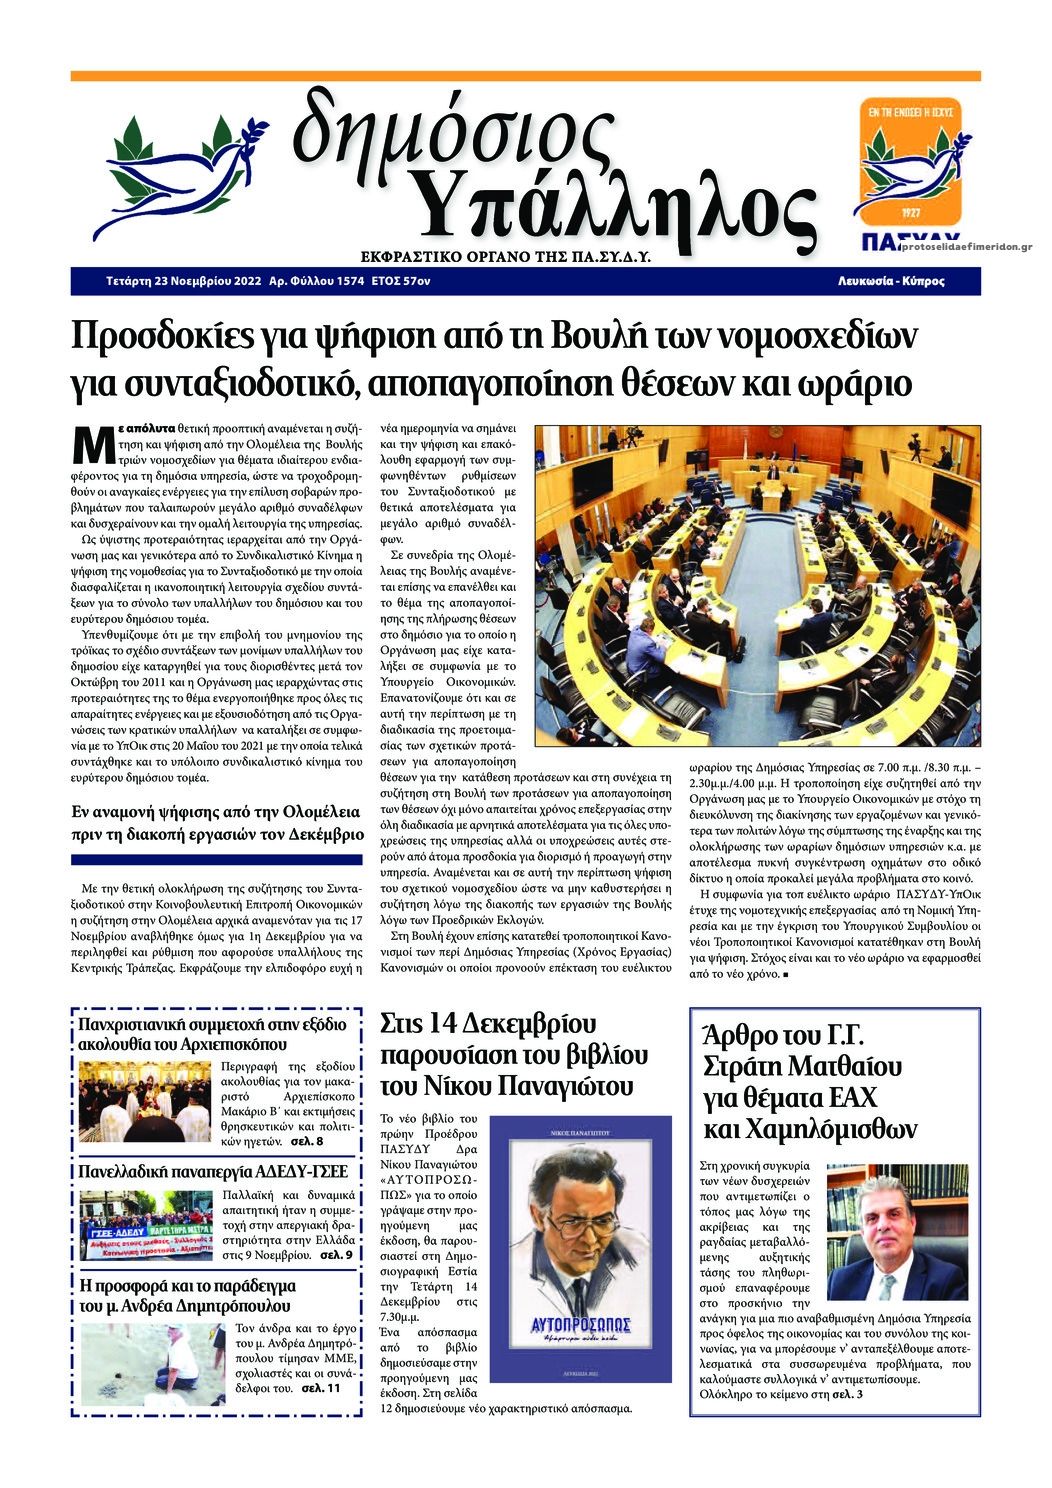 Πρωτοσέλιδο εφημερίδας Δημόσιος Υπάλληλος Κύπρου